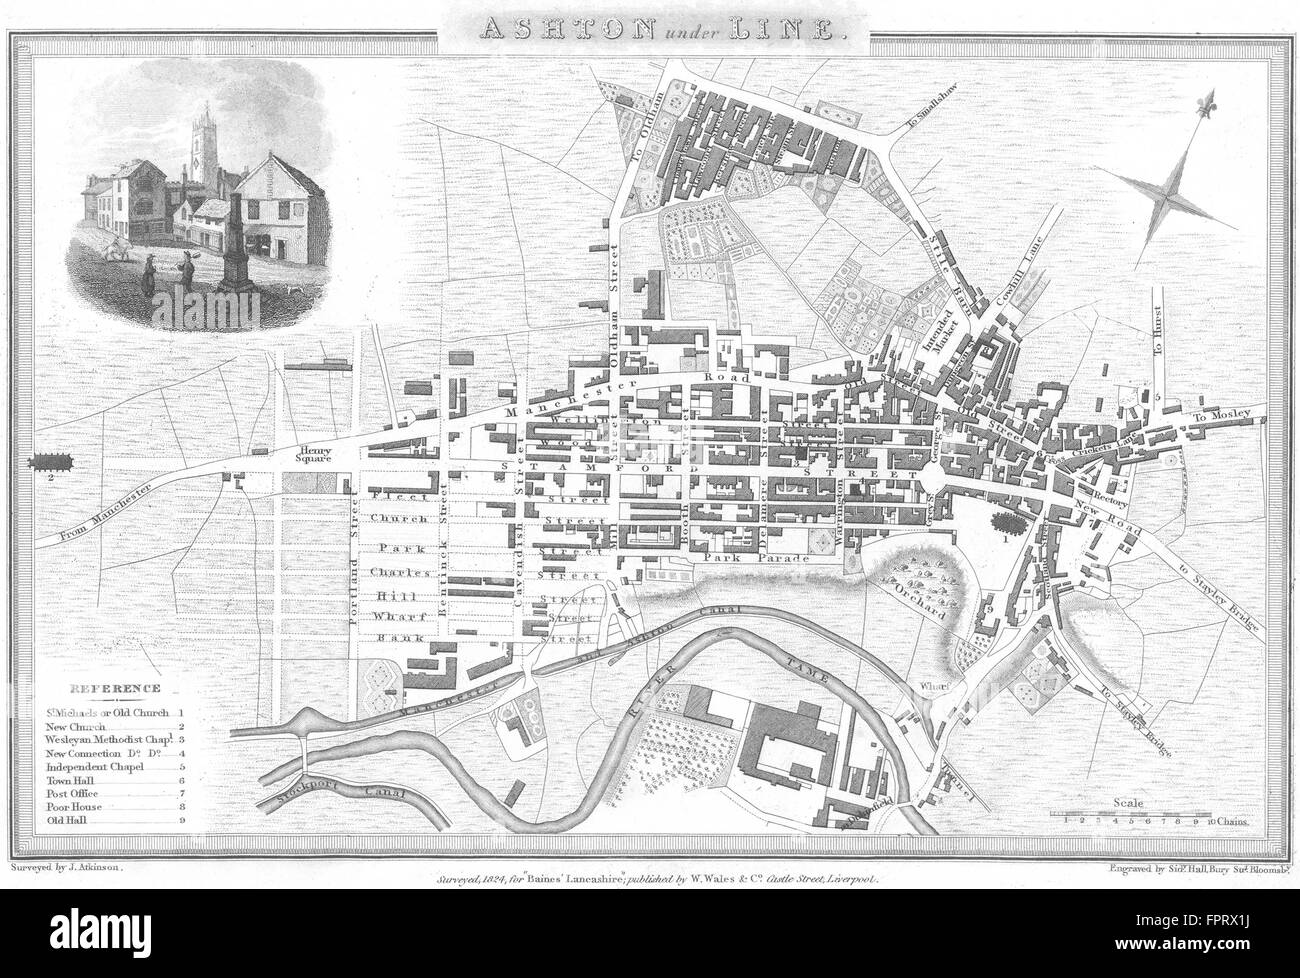 CHESHIRE: Ashton under Lyne: Town Plan Wm Wales, c1825 antique map Stock Photo